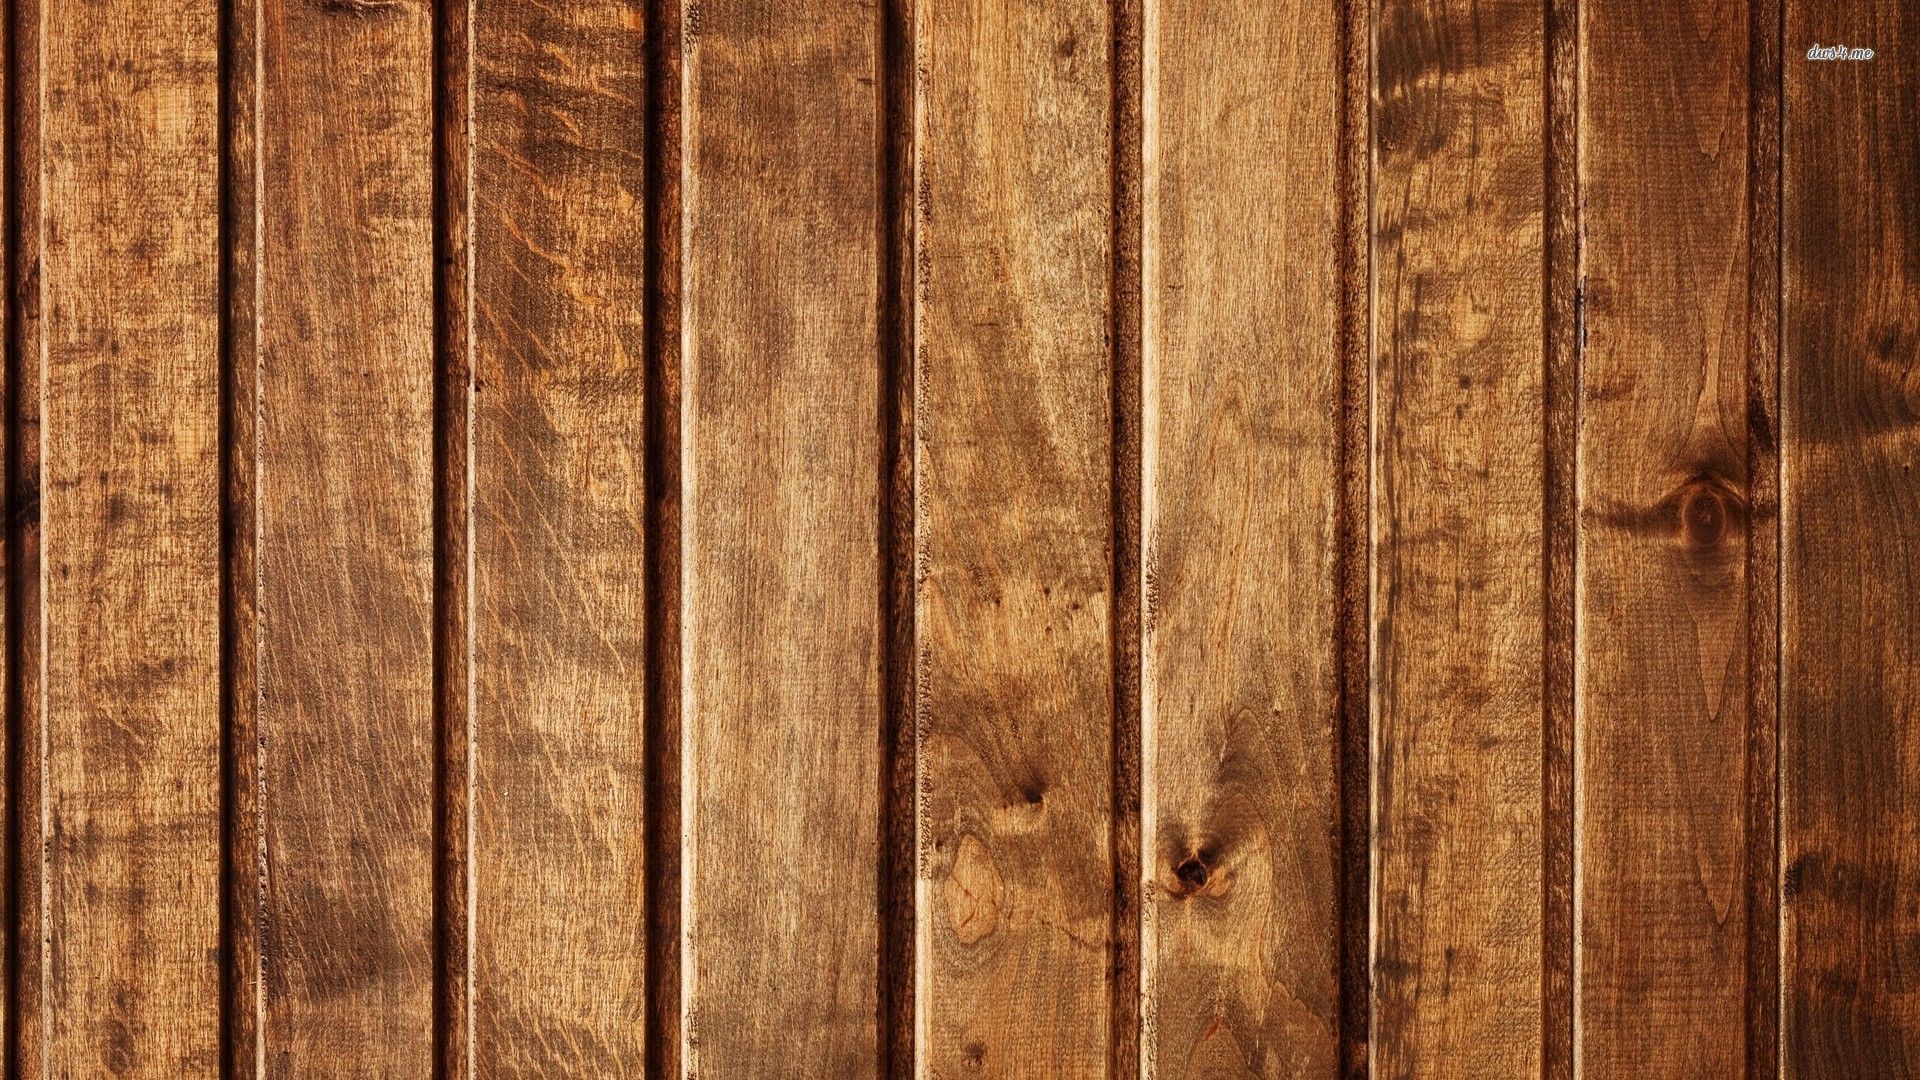 Amazing Wood Wallpapers - Los mejores fondos de madera increíbles gratis